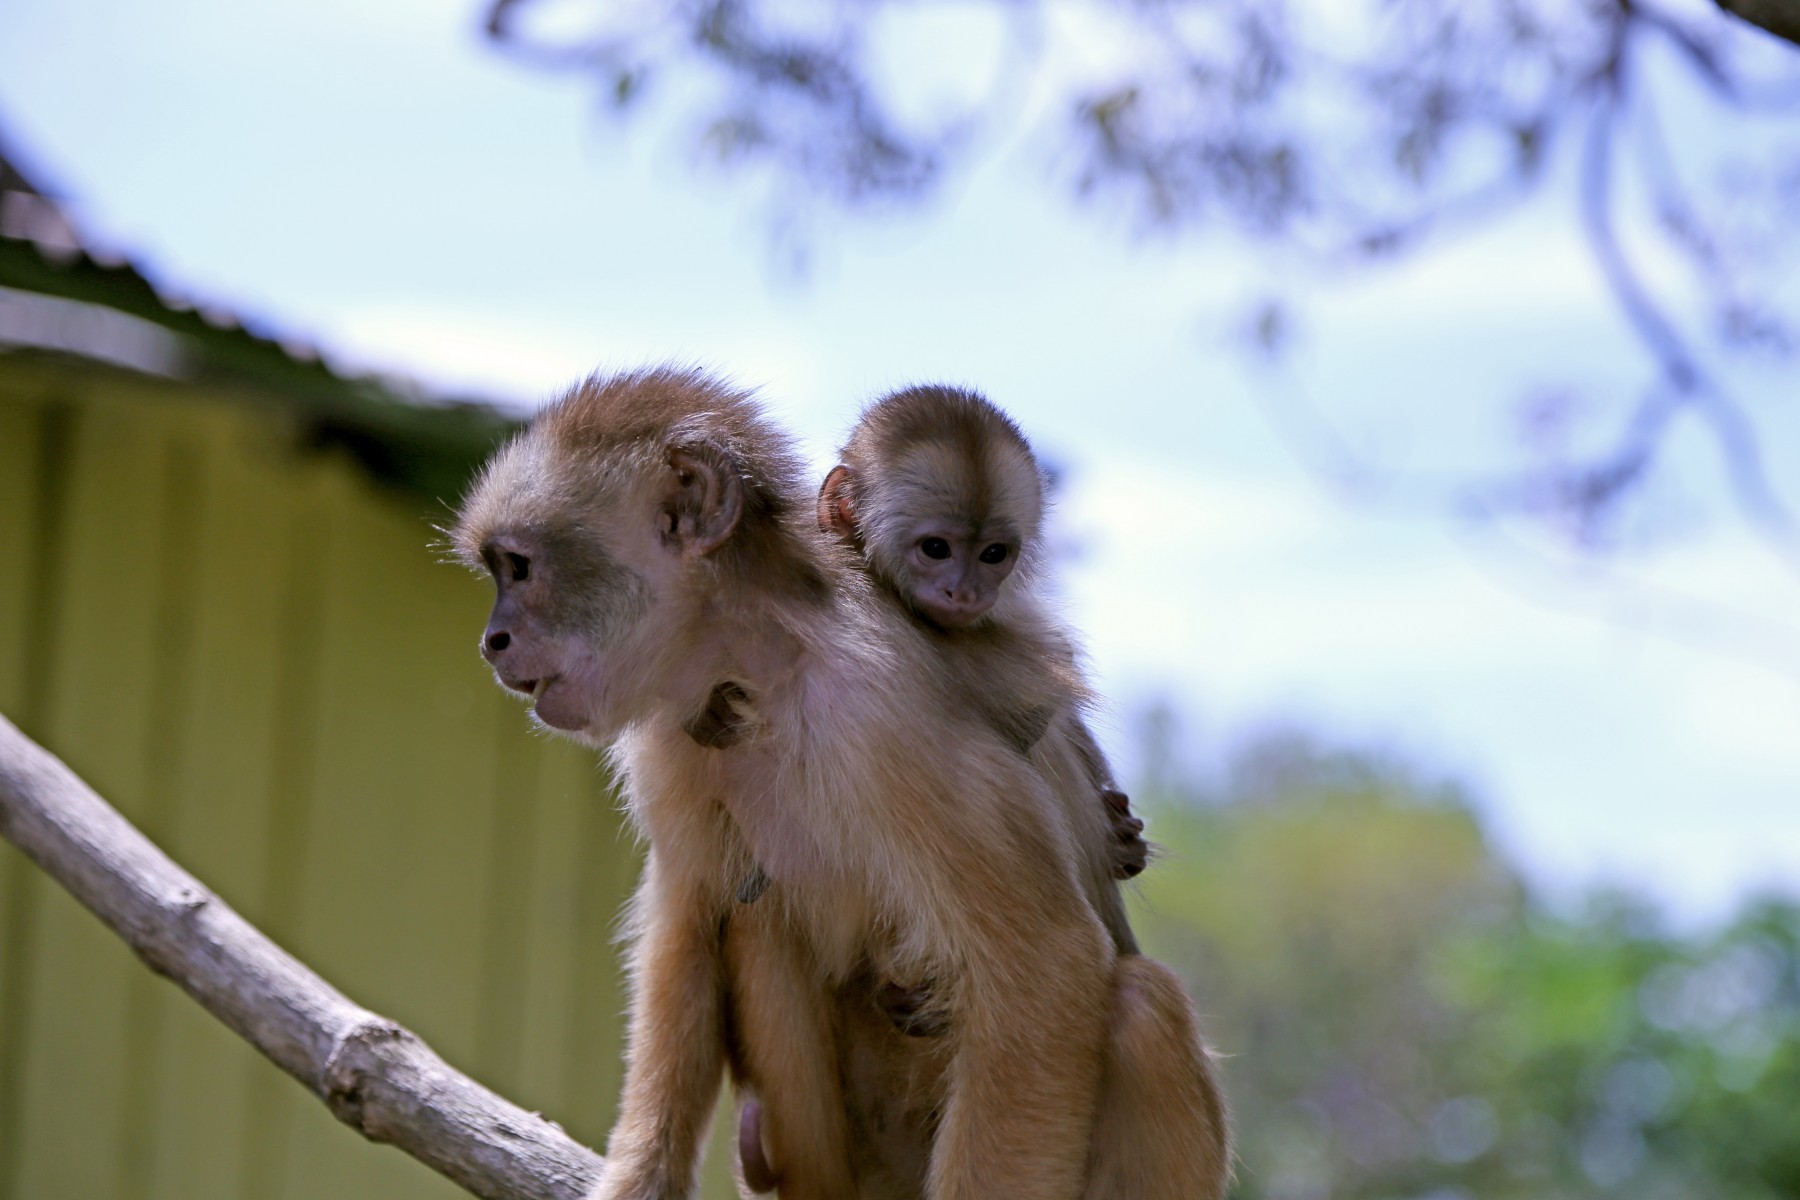 monkeys in the rainforest